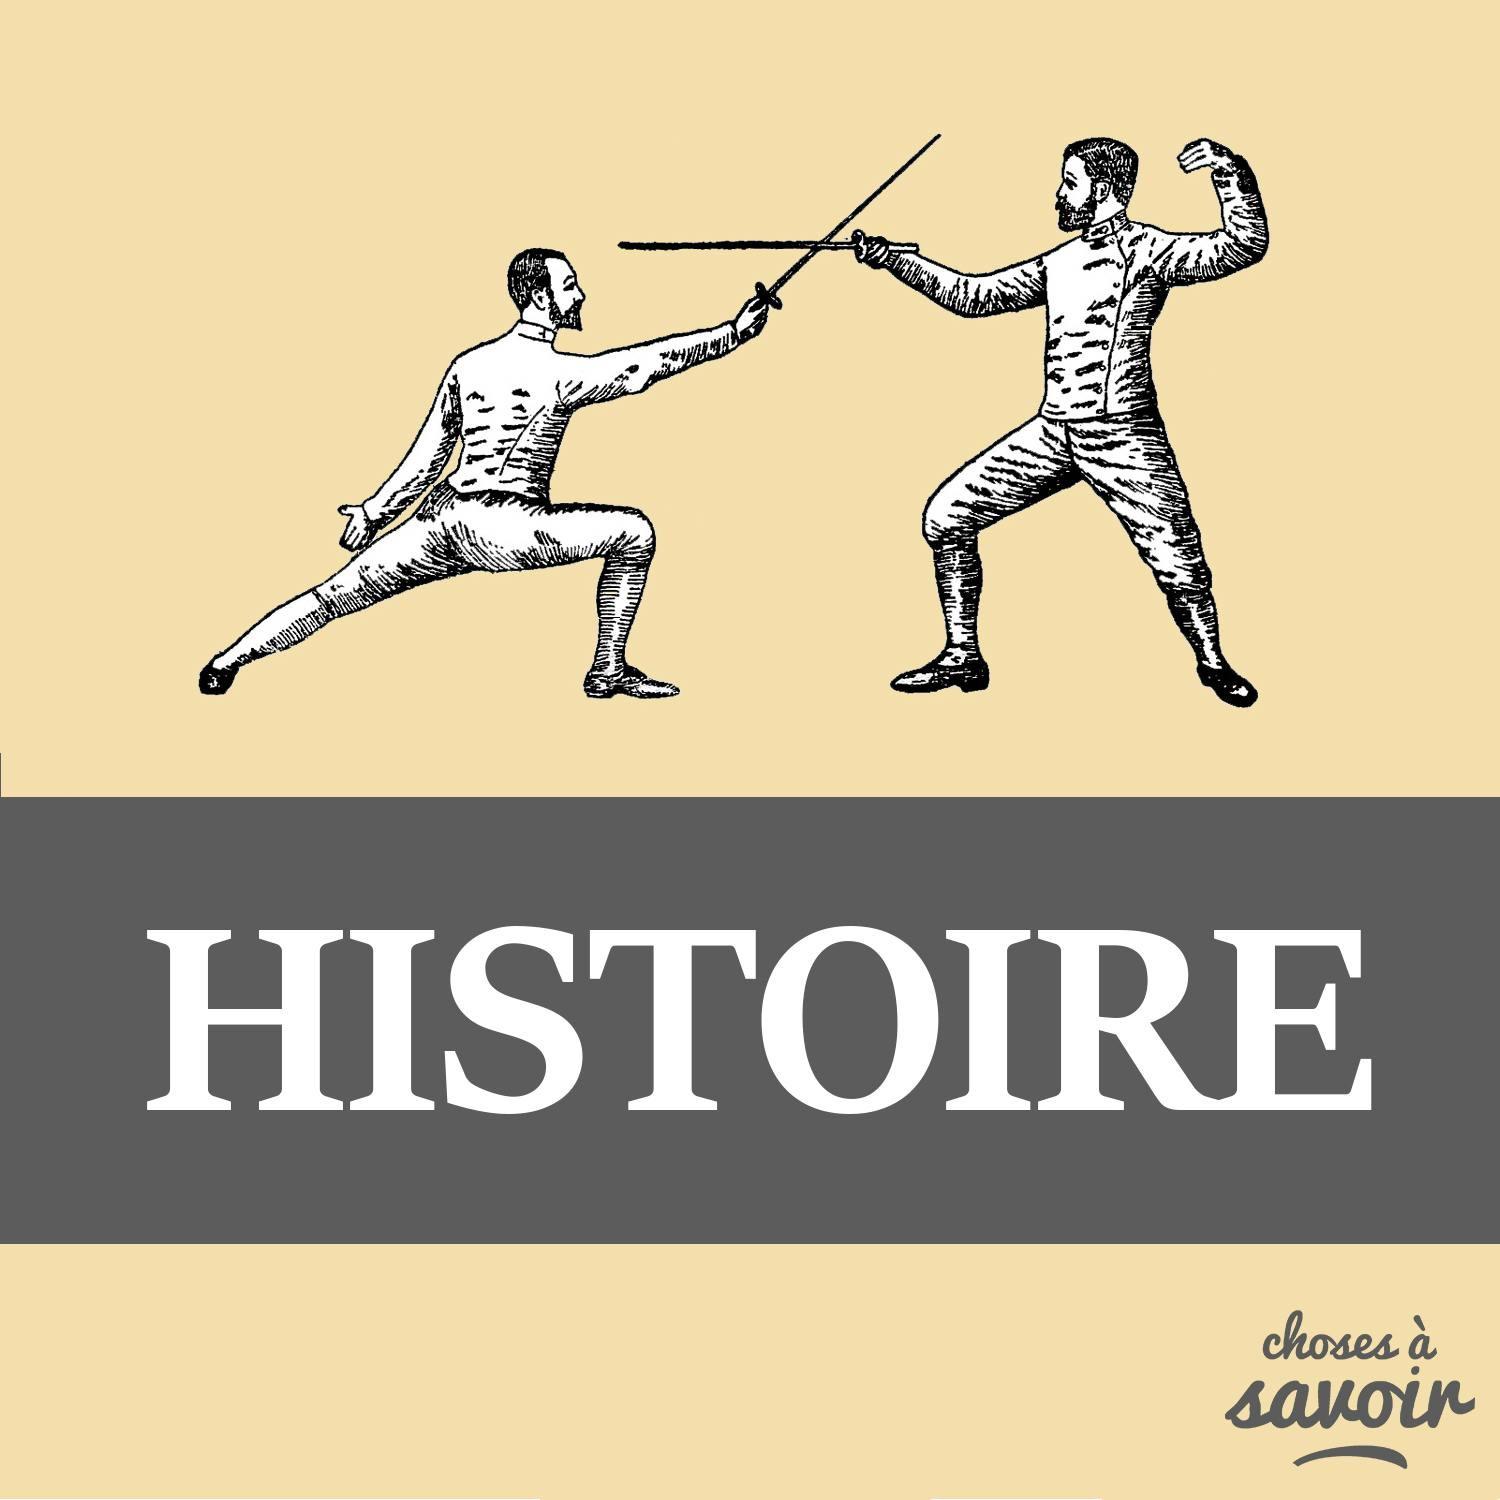 Pourquoi une grève à Limoges en 1905 fut historique ?